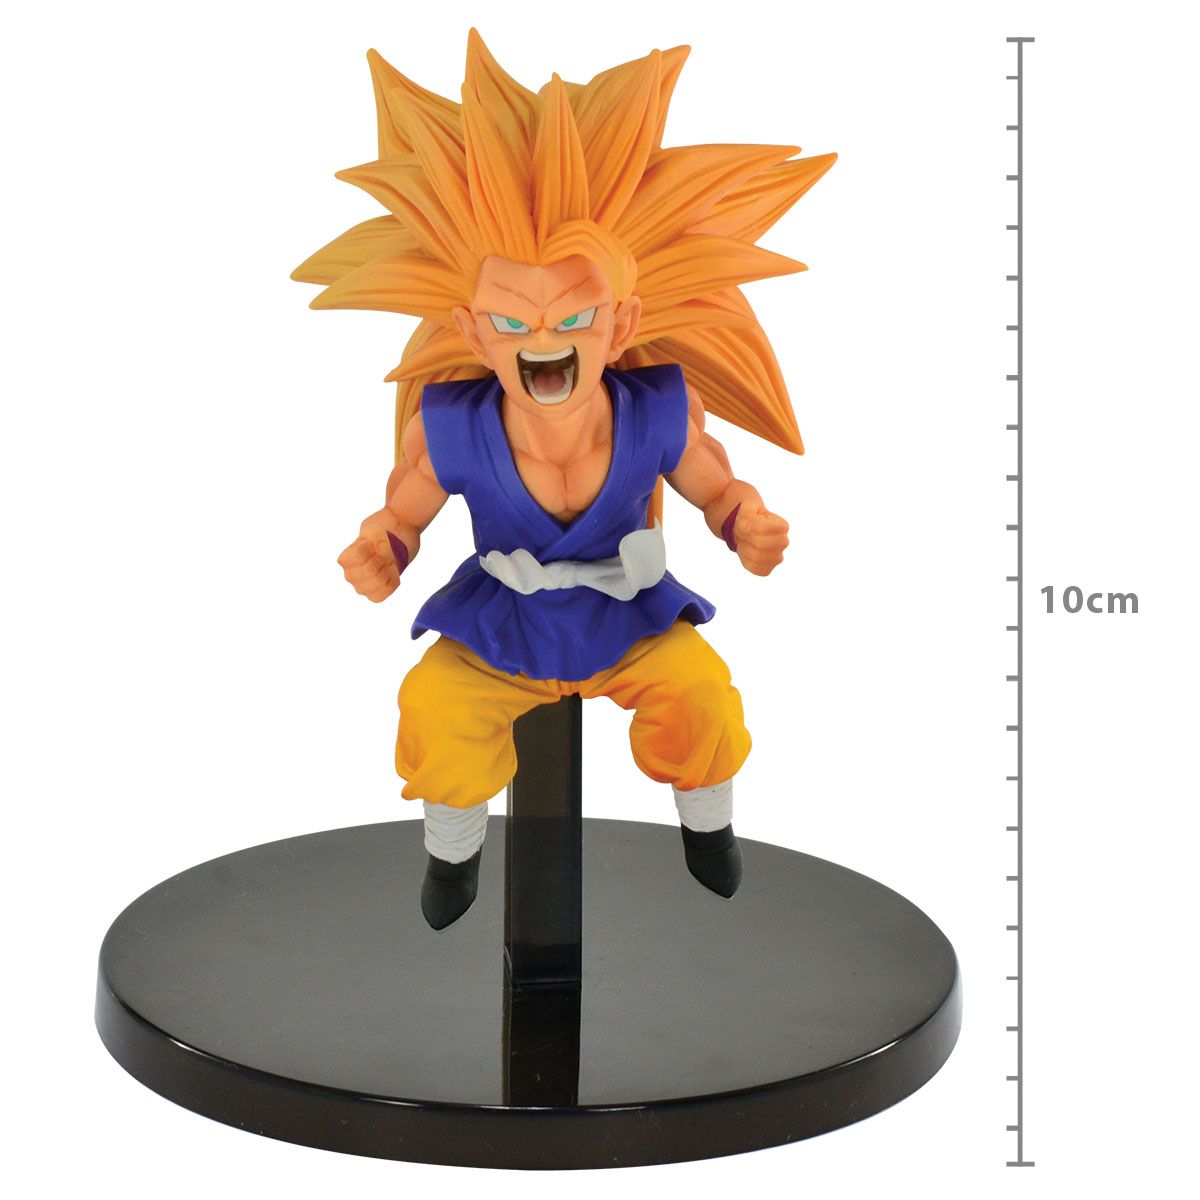 Compre o Action Figure de Dragon Ball GT de Goku Super Saiyajin 4 na  Explorers Club Toys